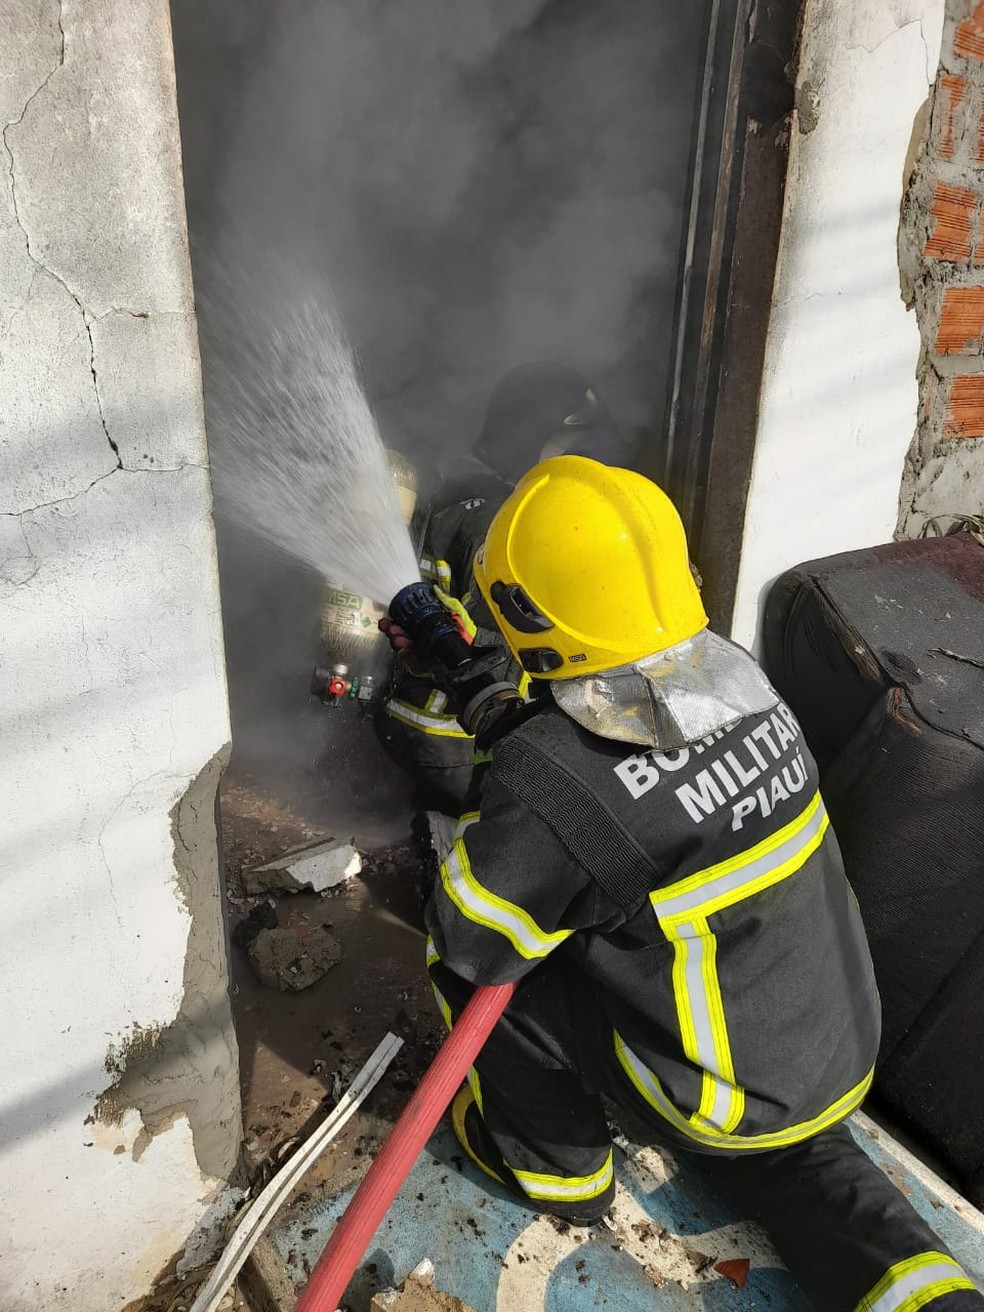 Moradora foi resgatada desacordada em incêndio na cidade de Teresina — Foto: Divulgação/Corpo de Bombeiros